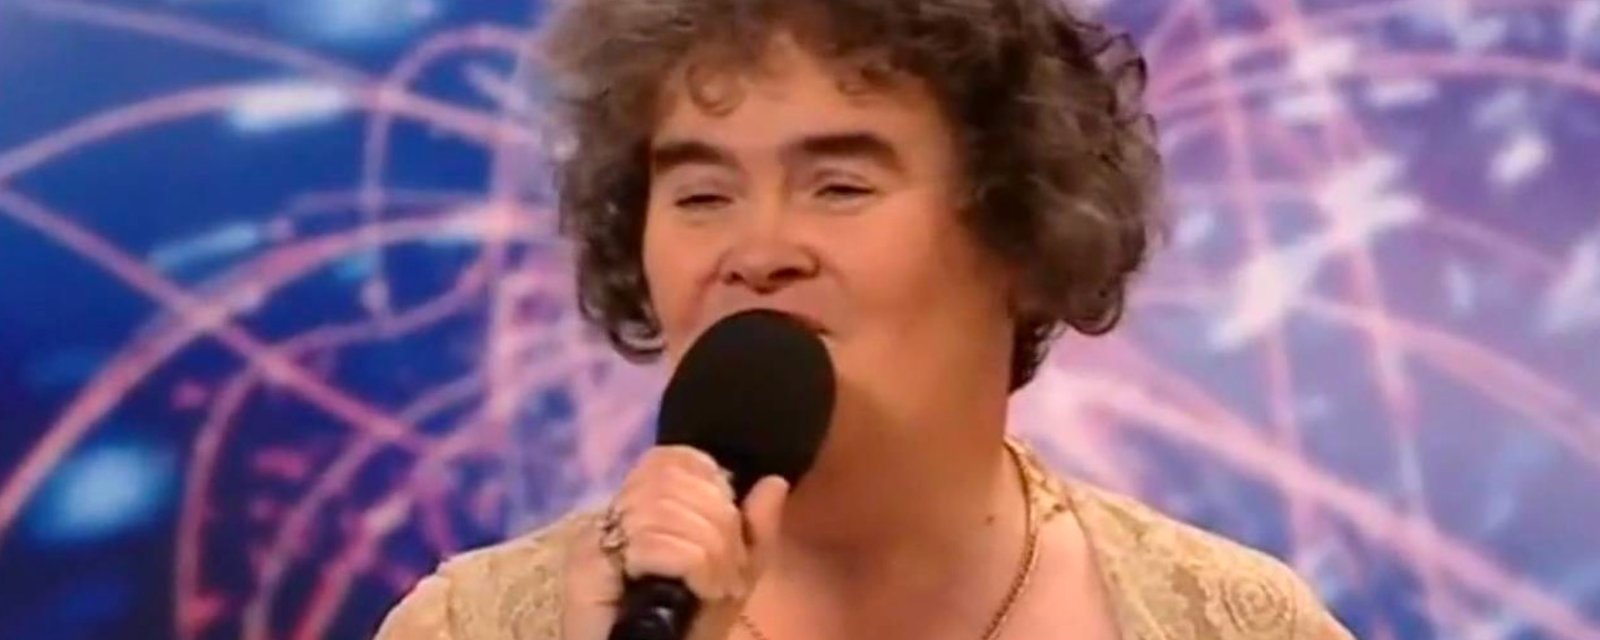 Susan Boyle s'est métamorphosée... Elle est magnifique! 